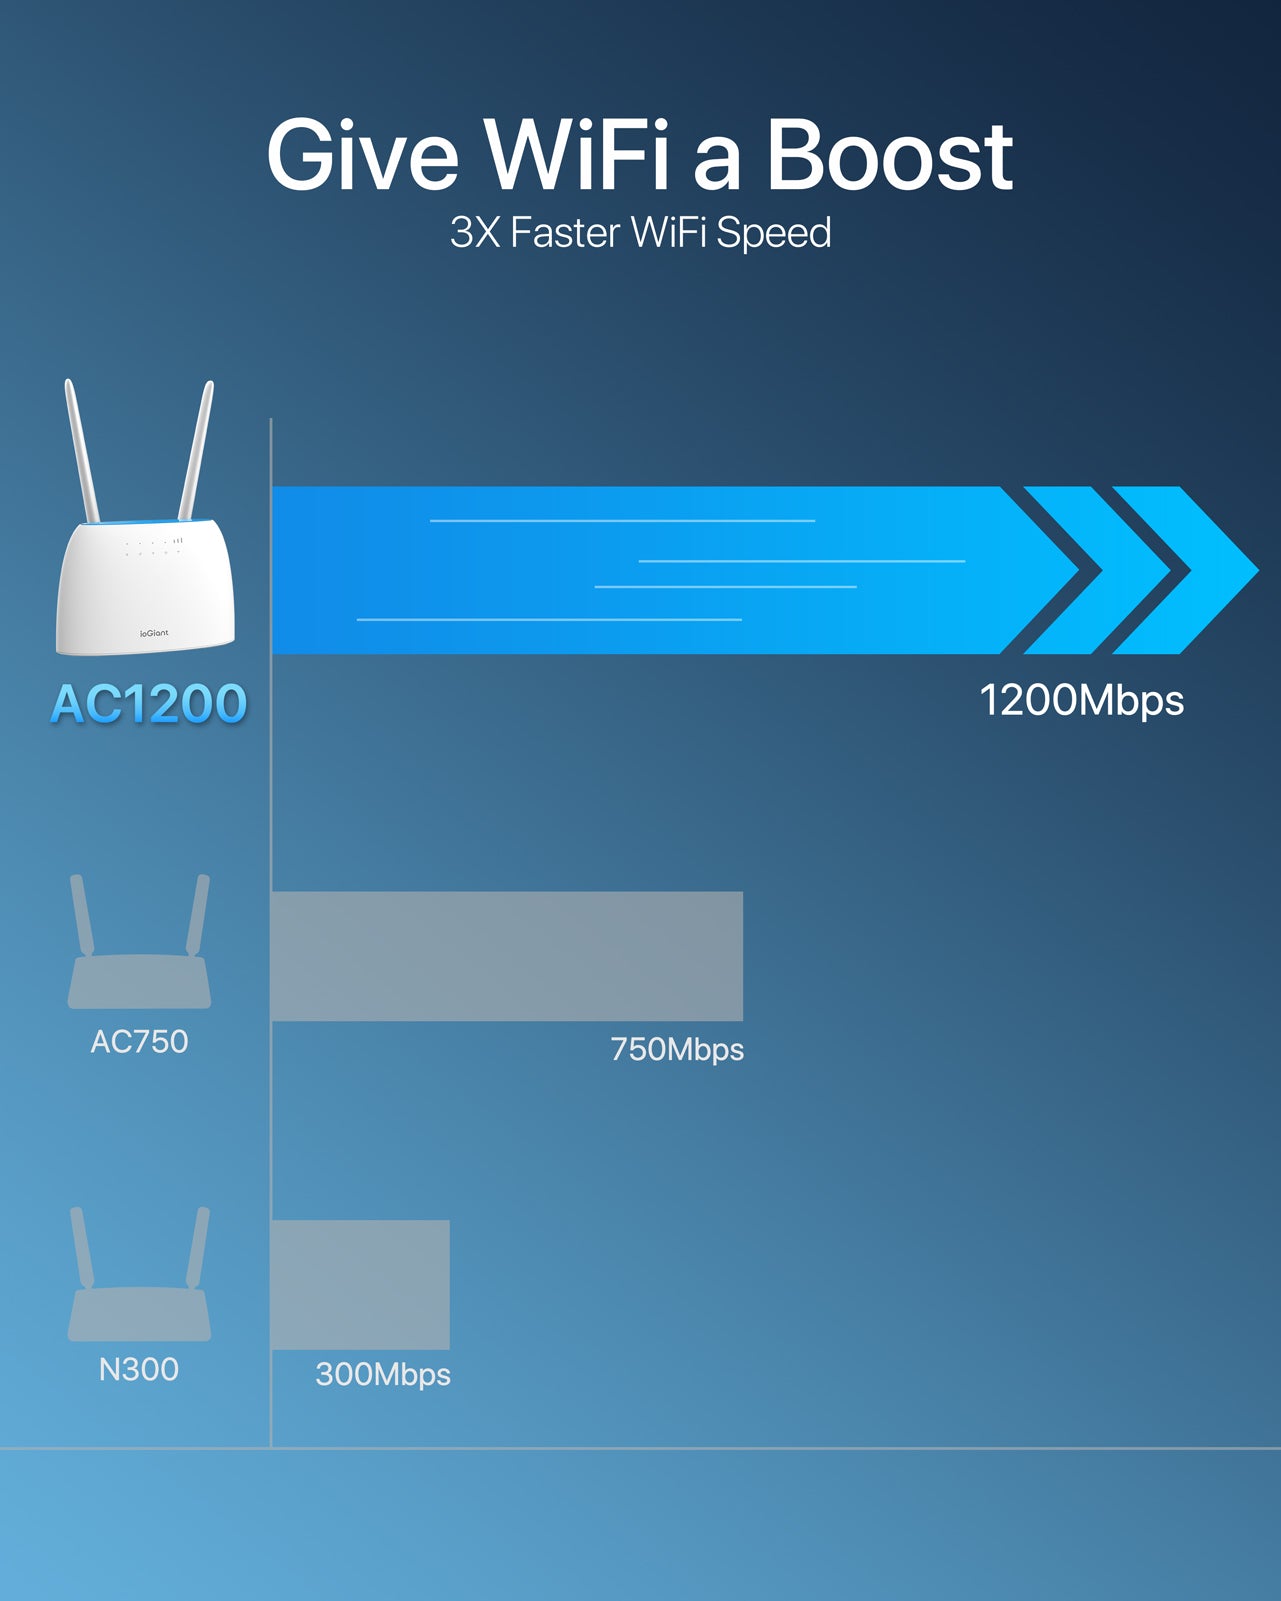 ioGiant Router 4G LTE con Sim, AC1200 Wi-Fi Dual-Band, Senza configurazione, Porta LAN/WAN, Connettività Fino a 64 Dispositivi, Antenne Staccabile, modem 4G Sim, Compatibile con Tutti Gli Operatori